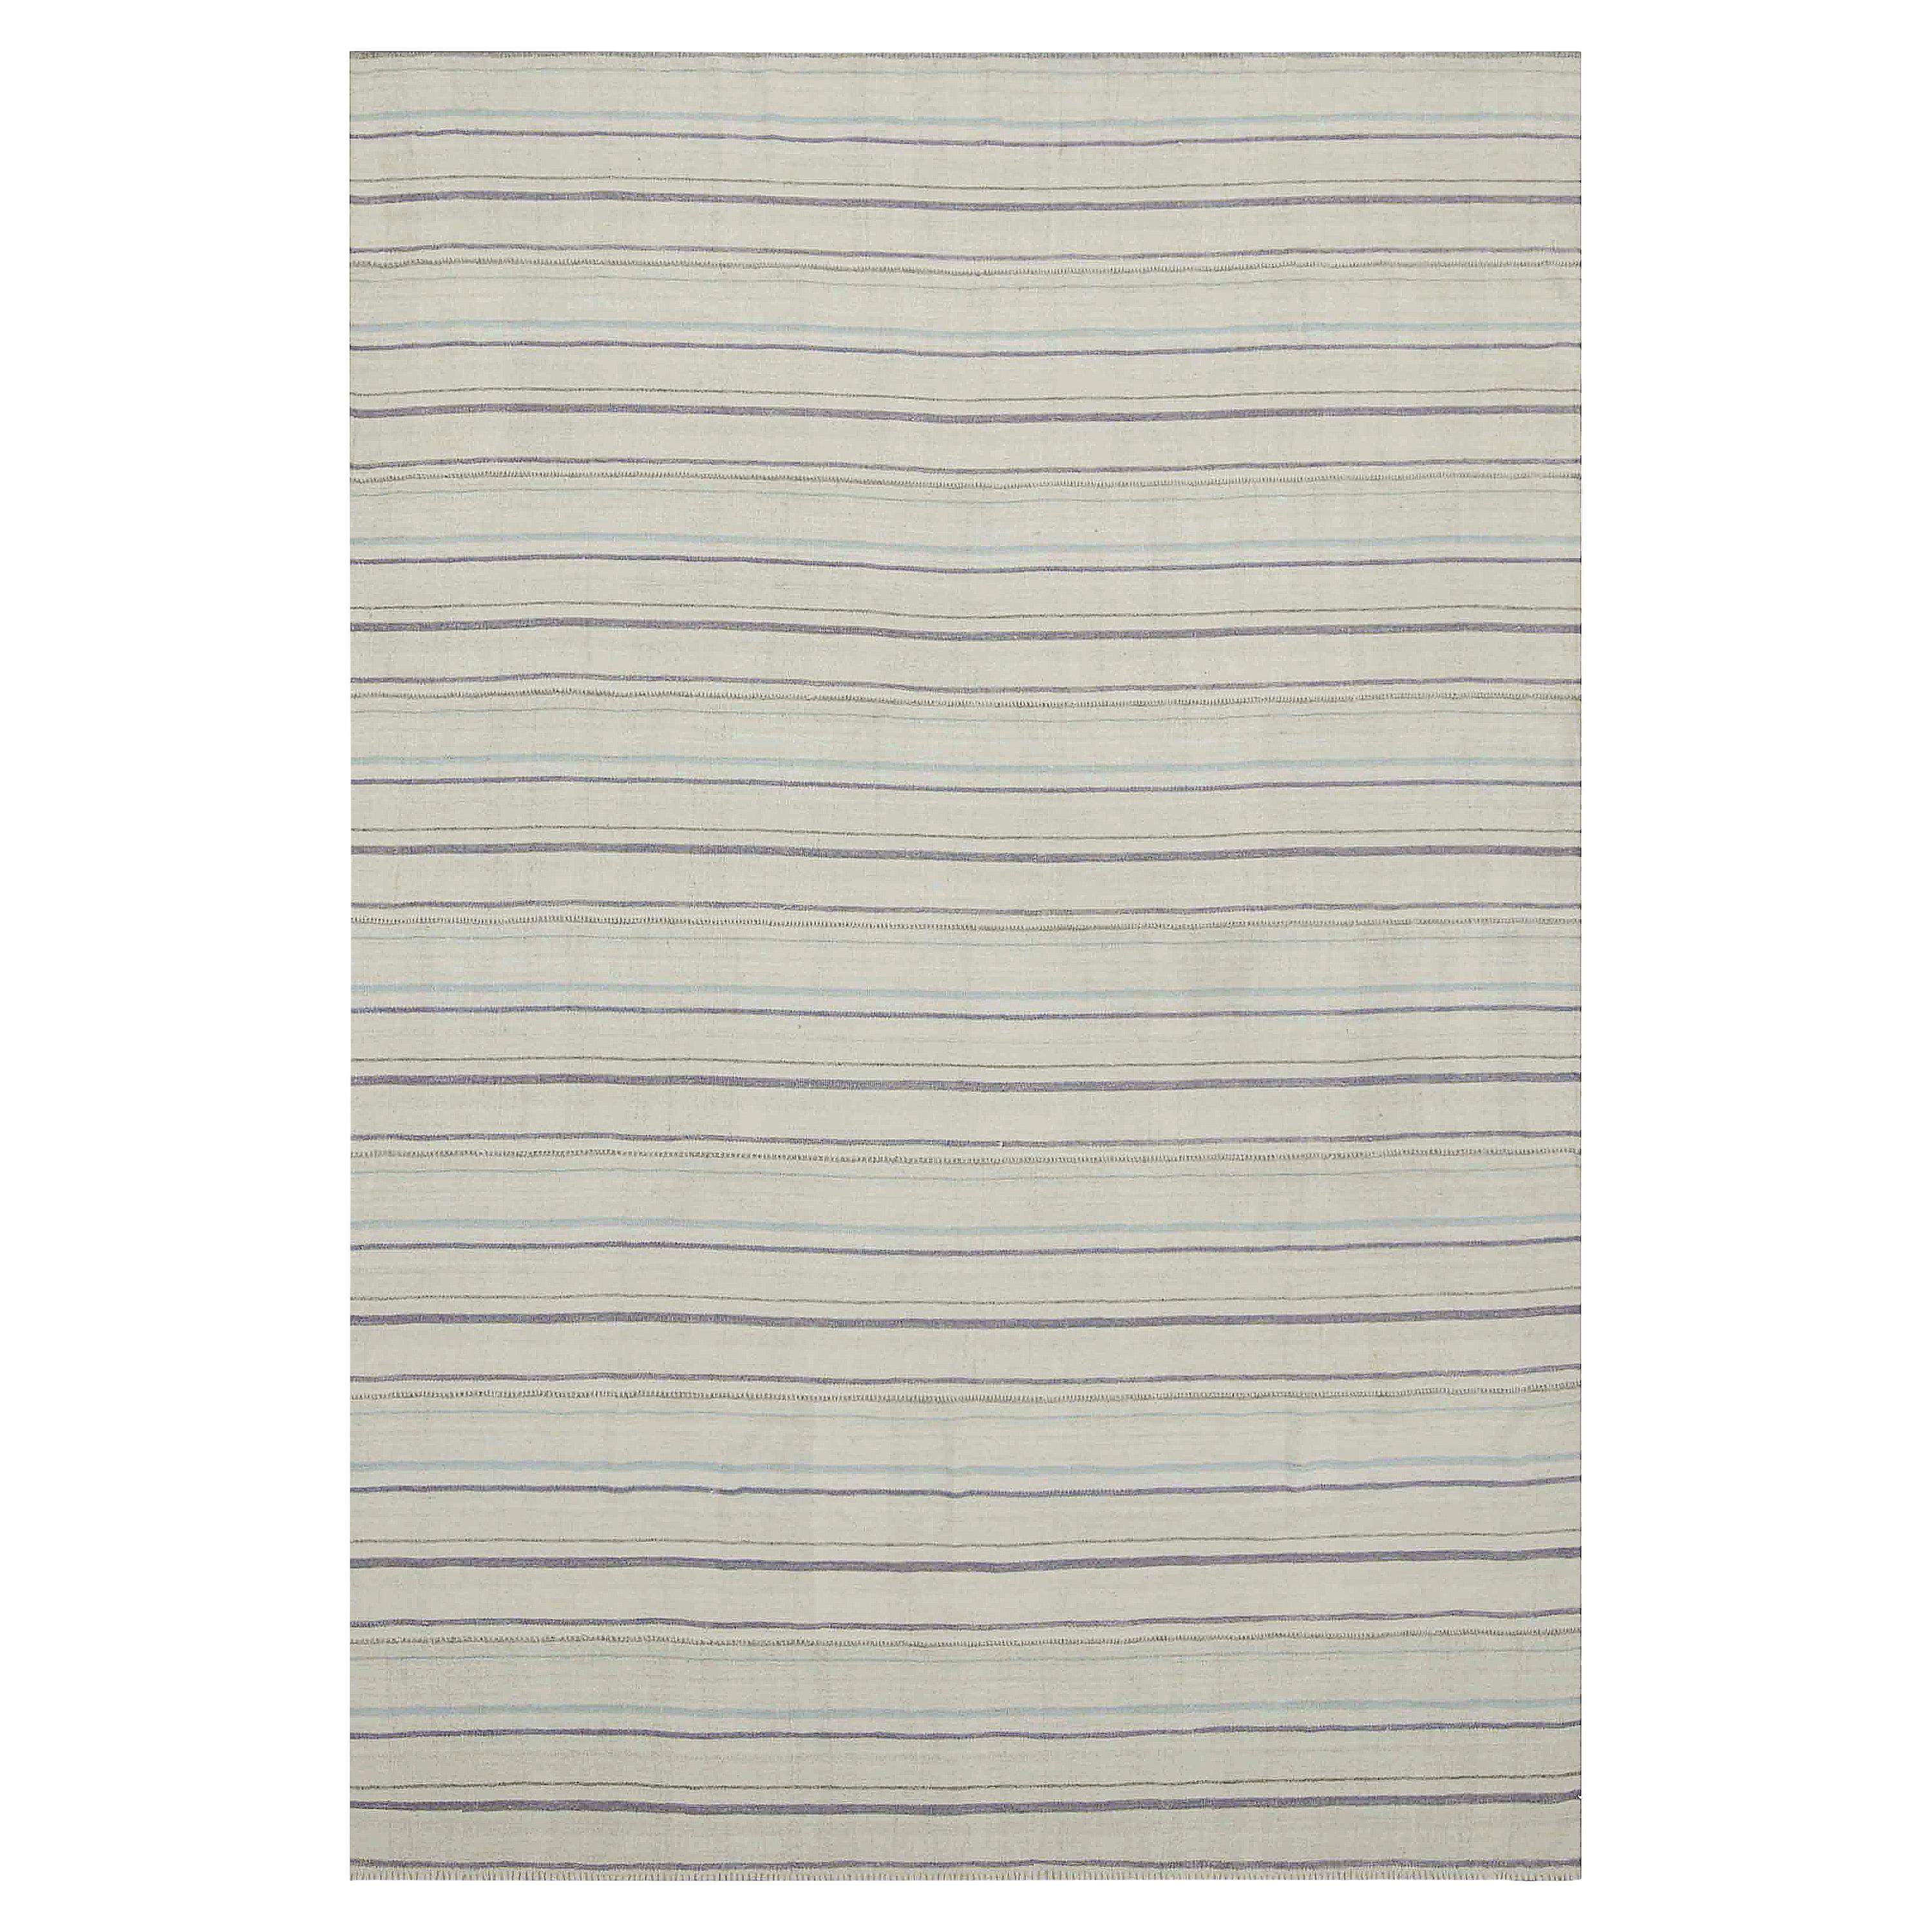 Türkischer Kelim-Teppich in Grau und Blau mit gestreiften Streifen auf elfenbeinfarbenem Feld